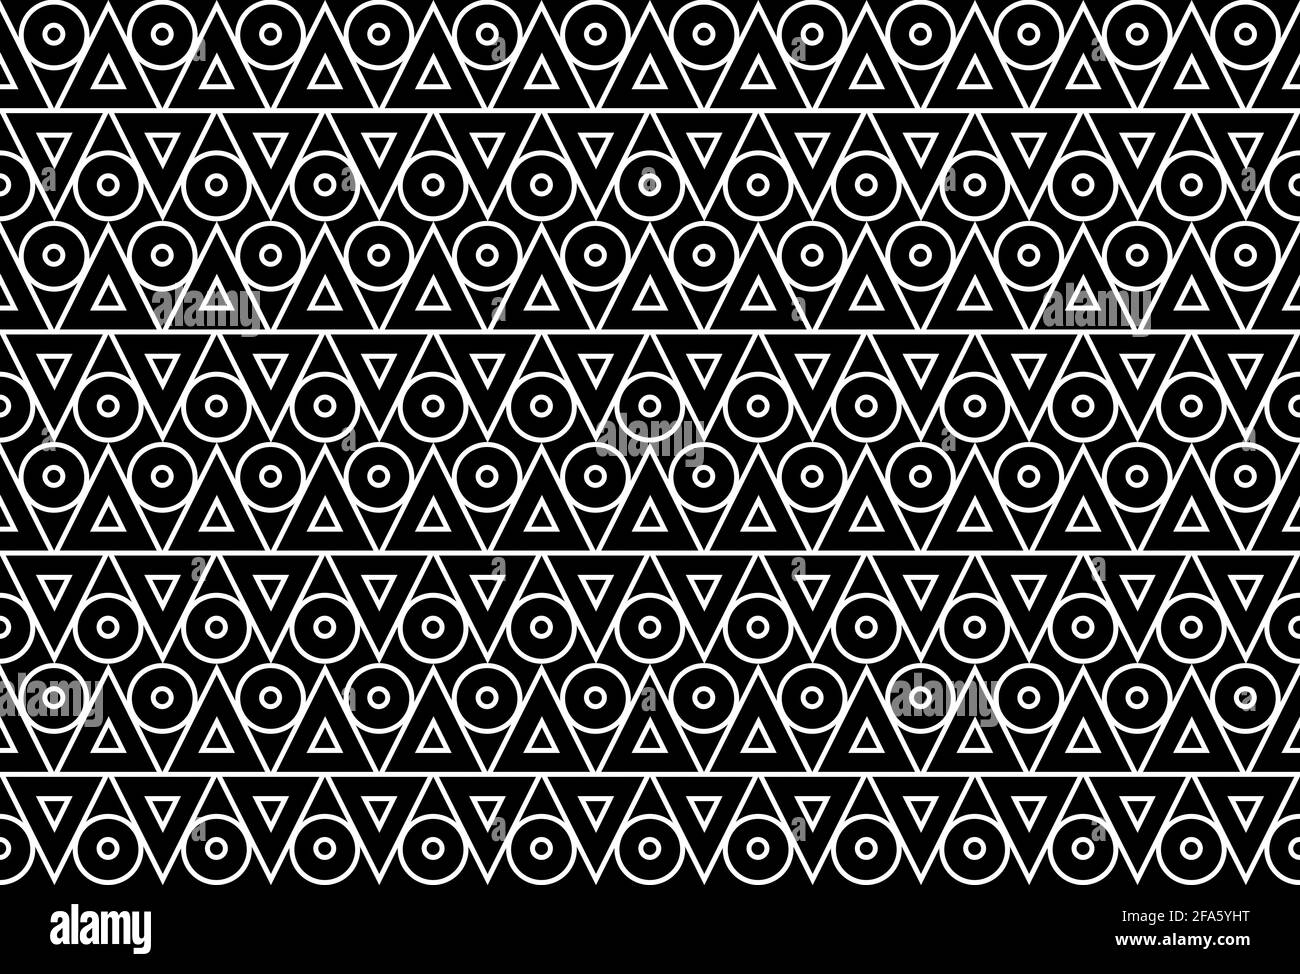 L'illustration sans couture des formes géométriques comprend deux triangles empilés et les cercles avec des bordures blanches et un arrière-plan noir et sont disposition z Banque D'Images